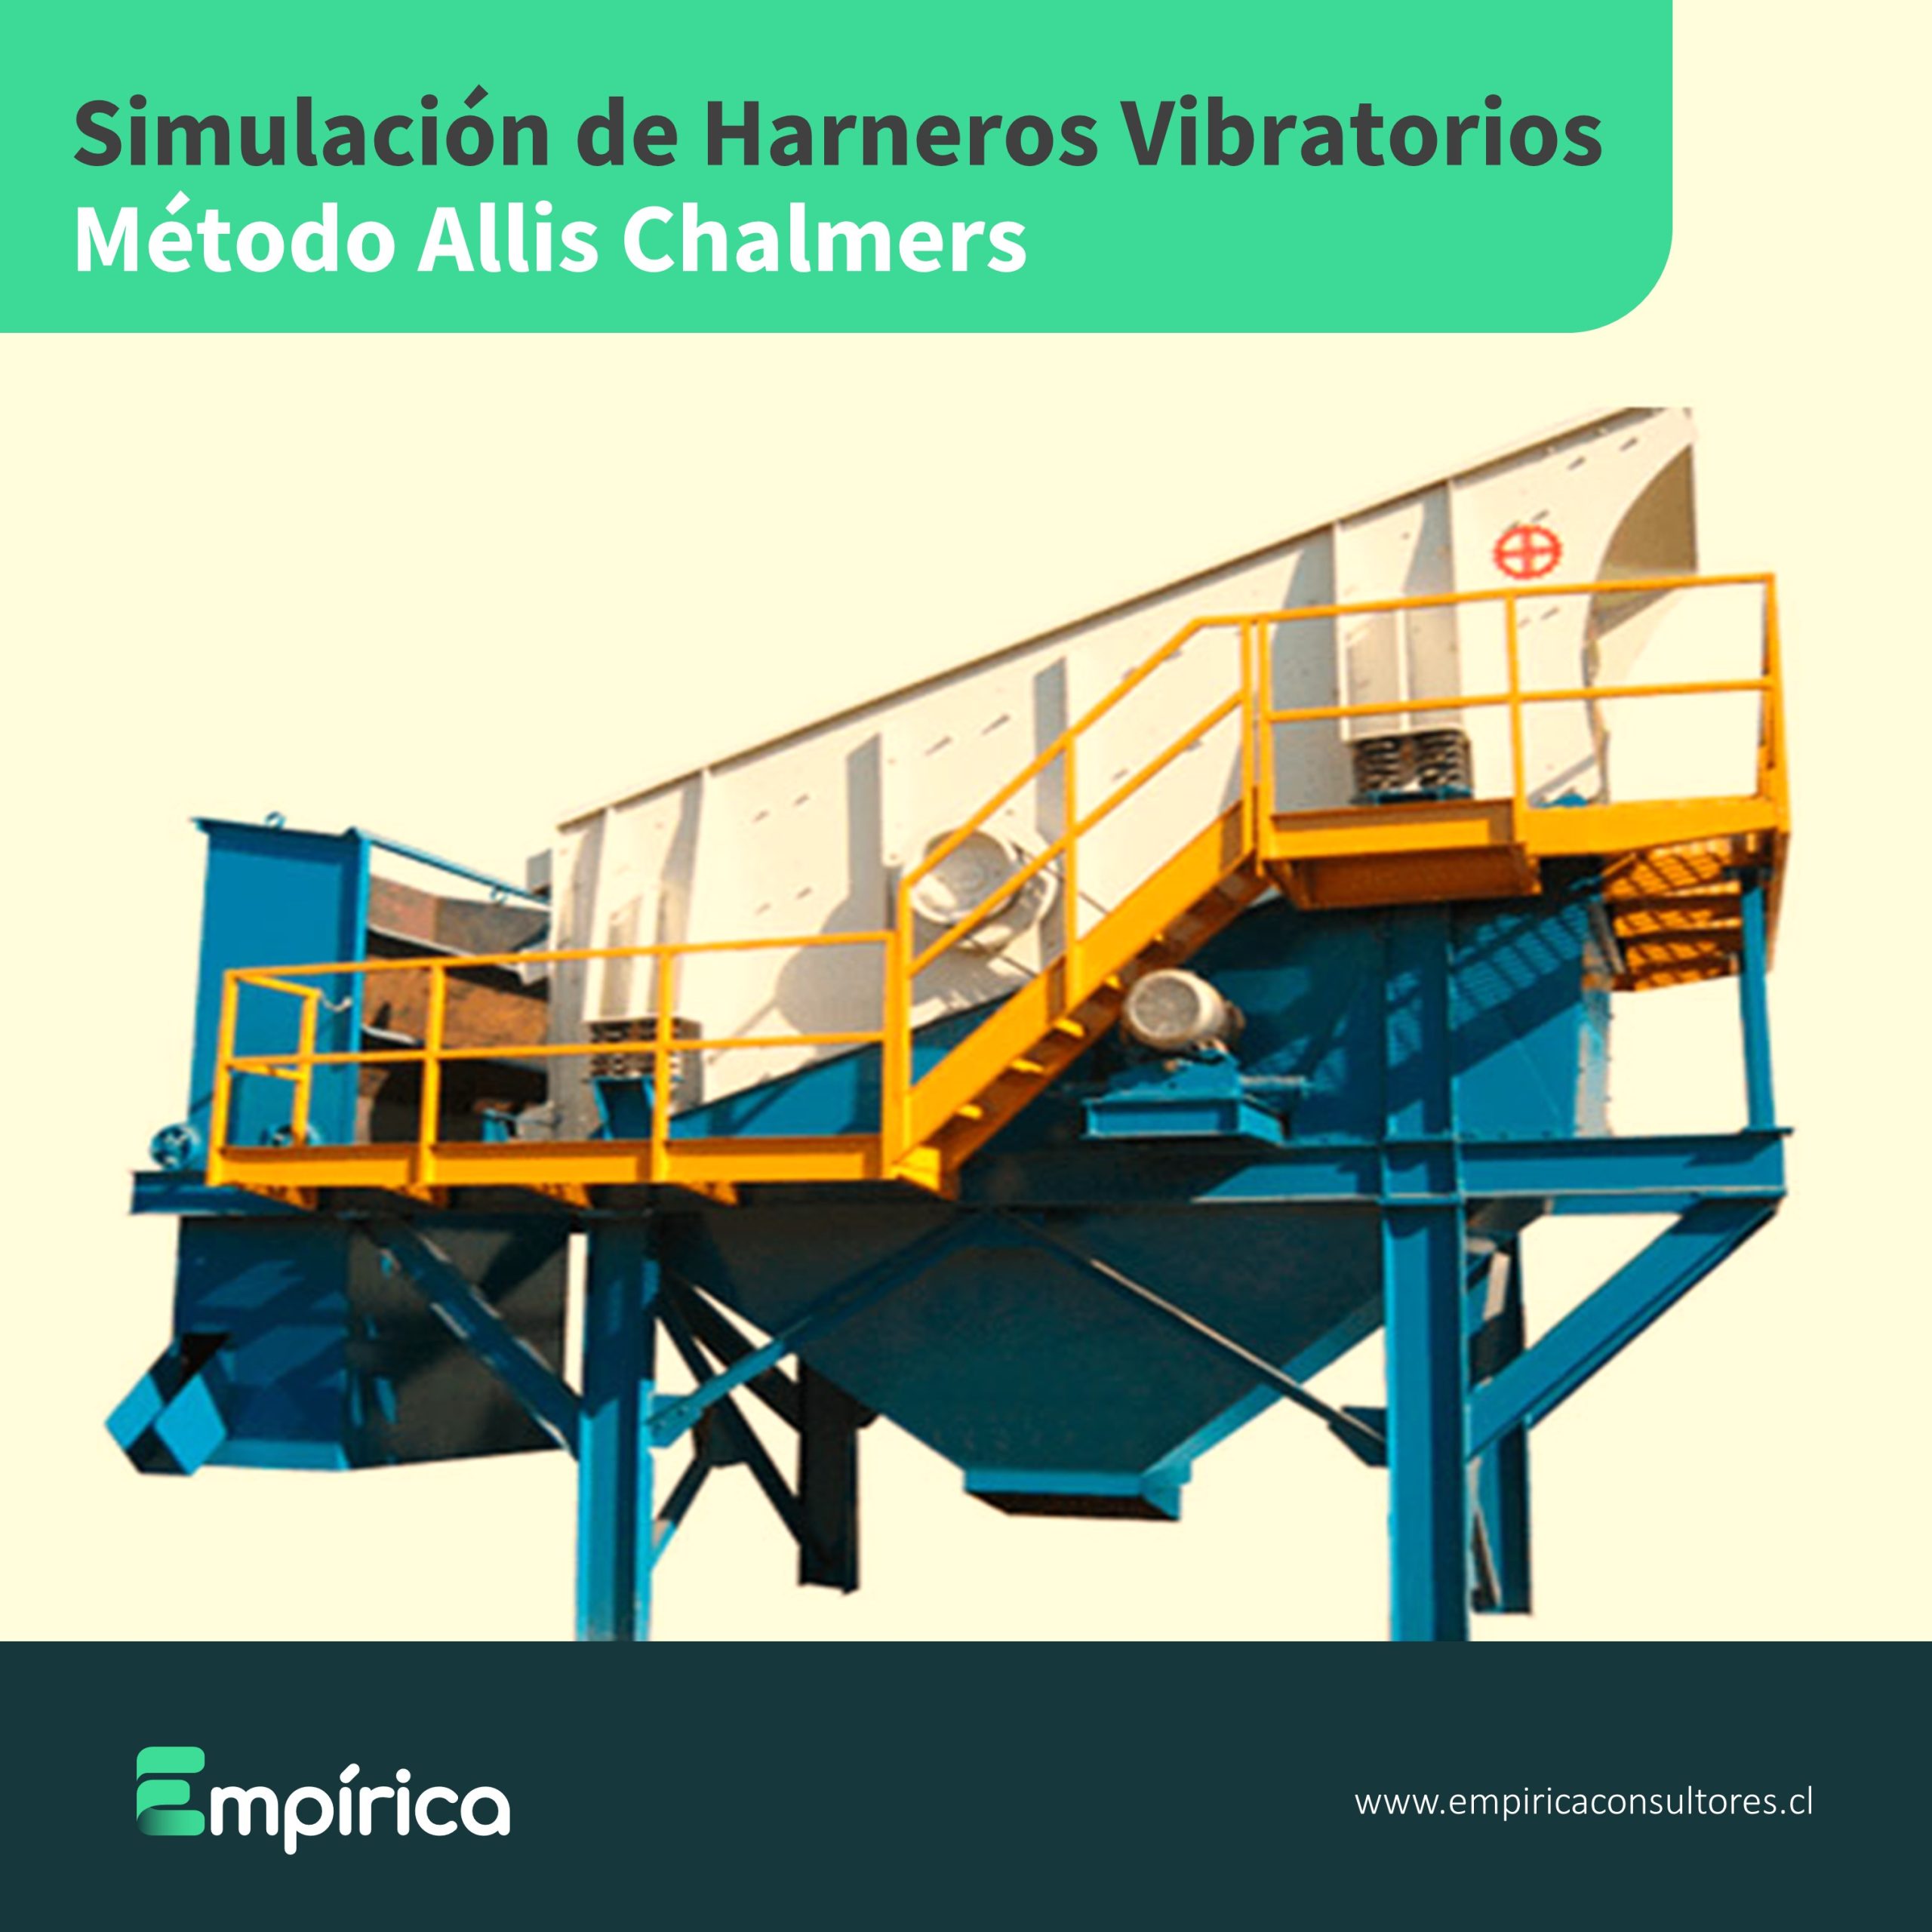 Read more about the article Simulación de Harneros Vibratorios utilizando el método Allis Chalmers